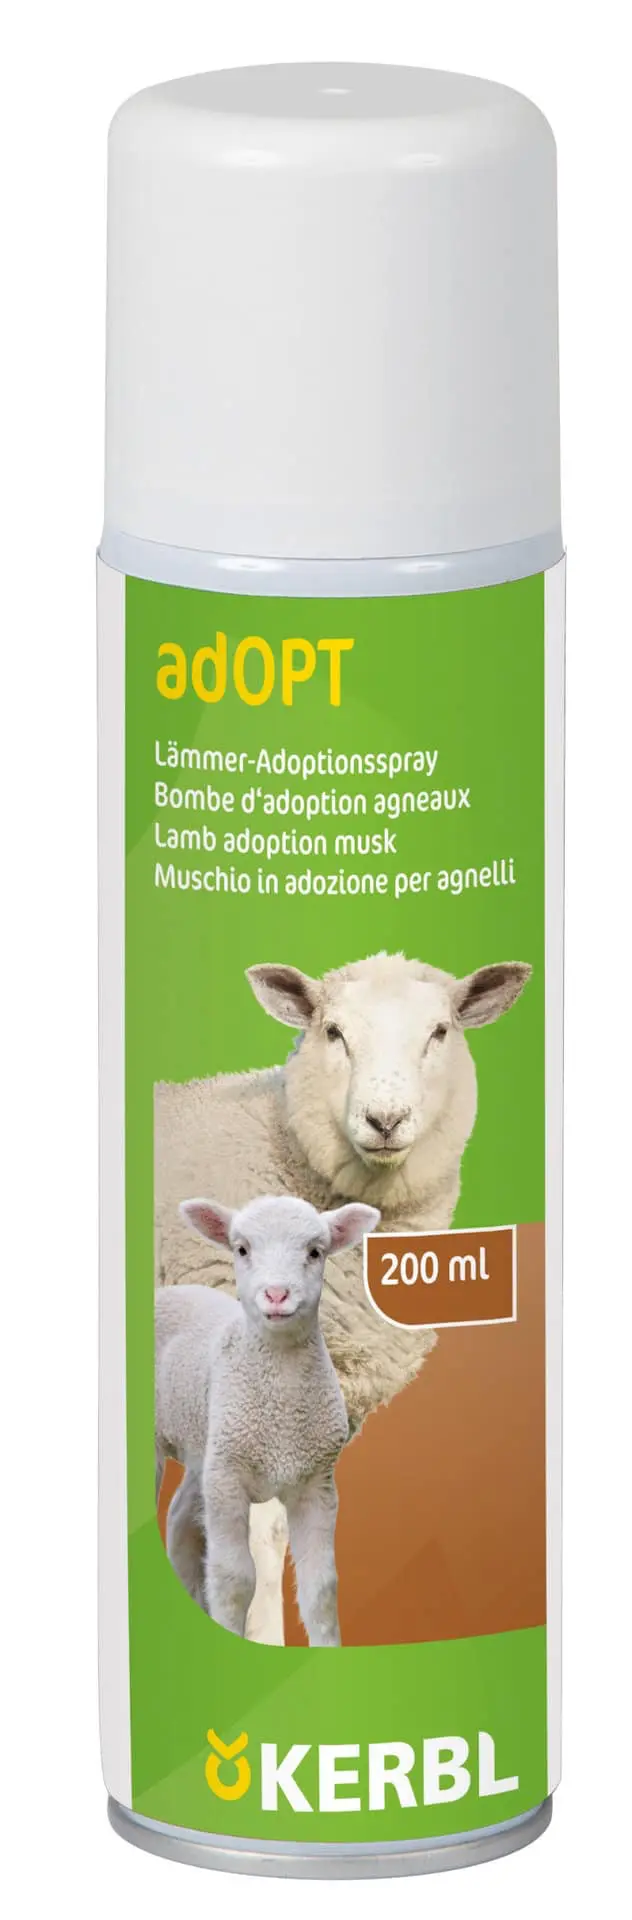 Lämmer Adoptionsspray adOPT 200 ml